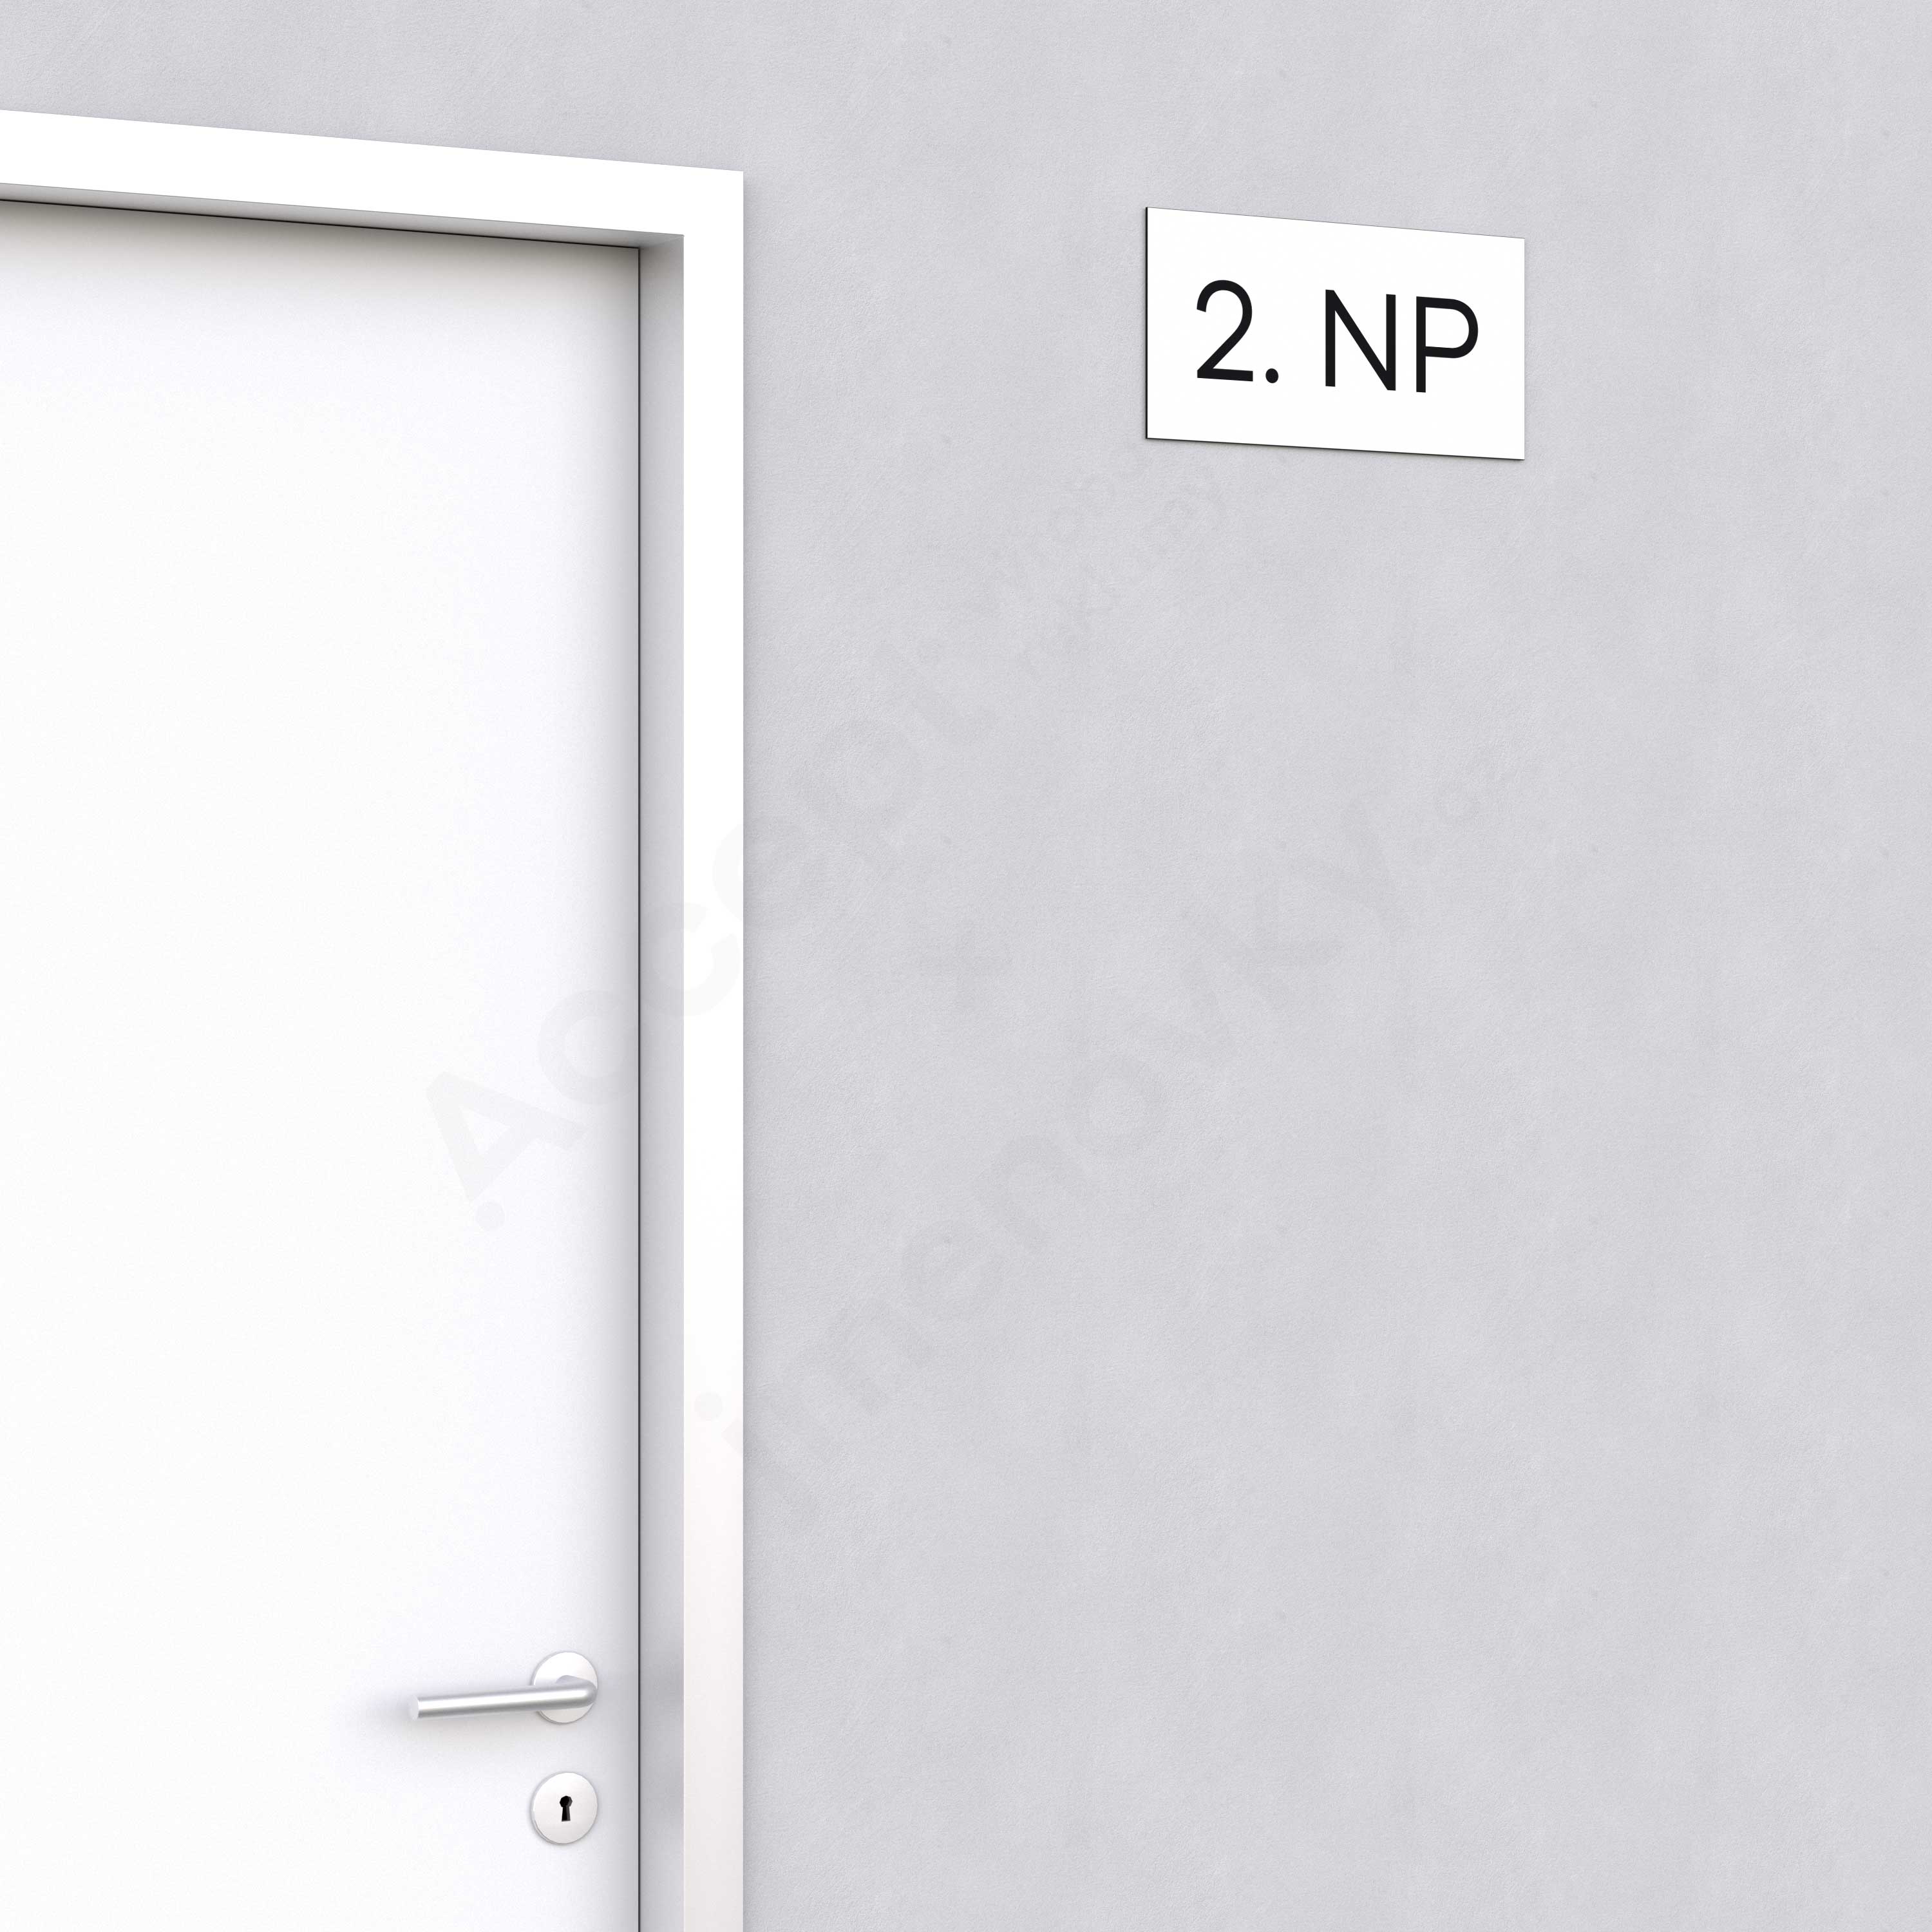 Označení podlaží "2. NP" - bílá tabulka - černý popis - náhled